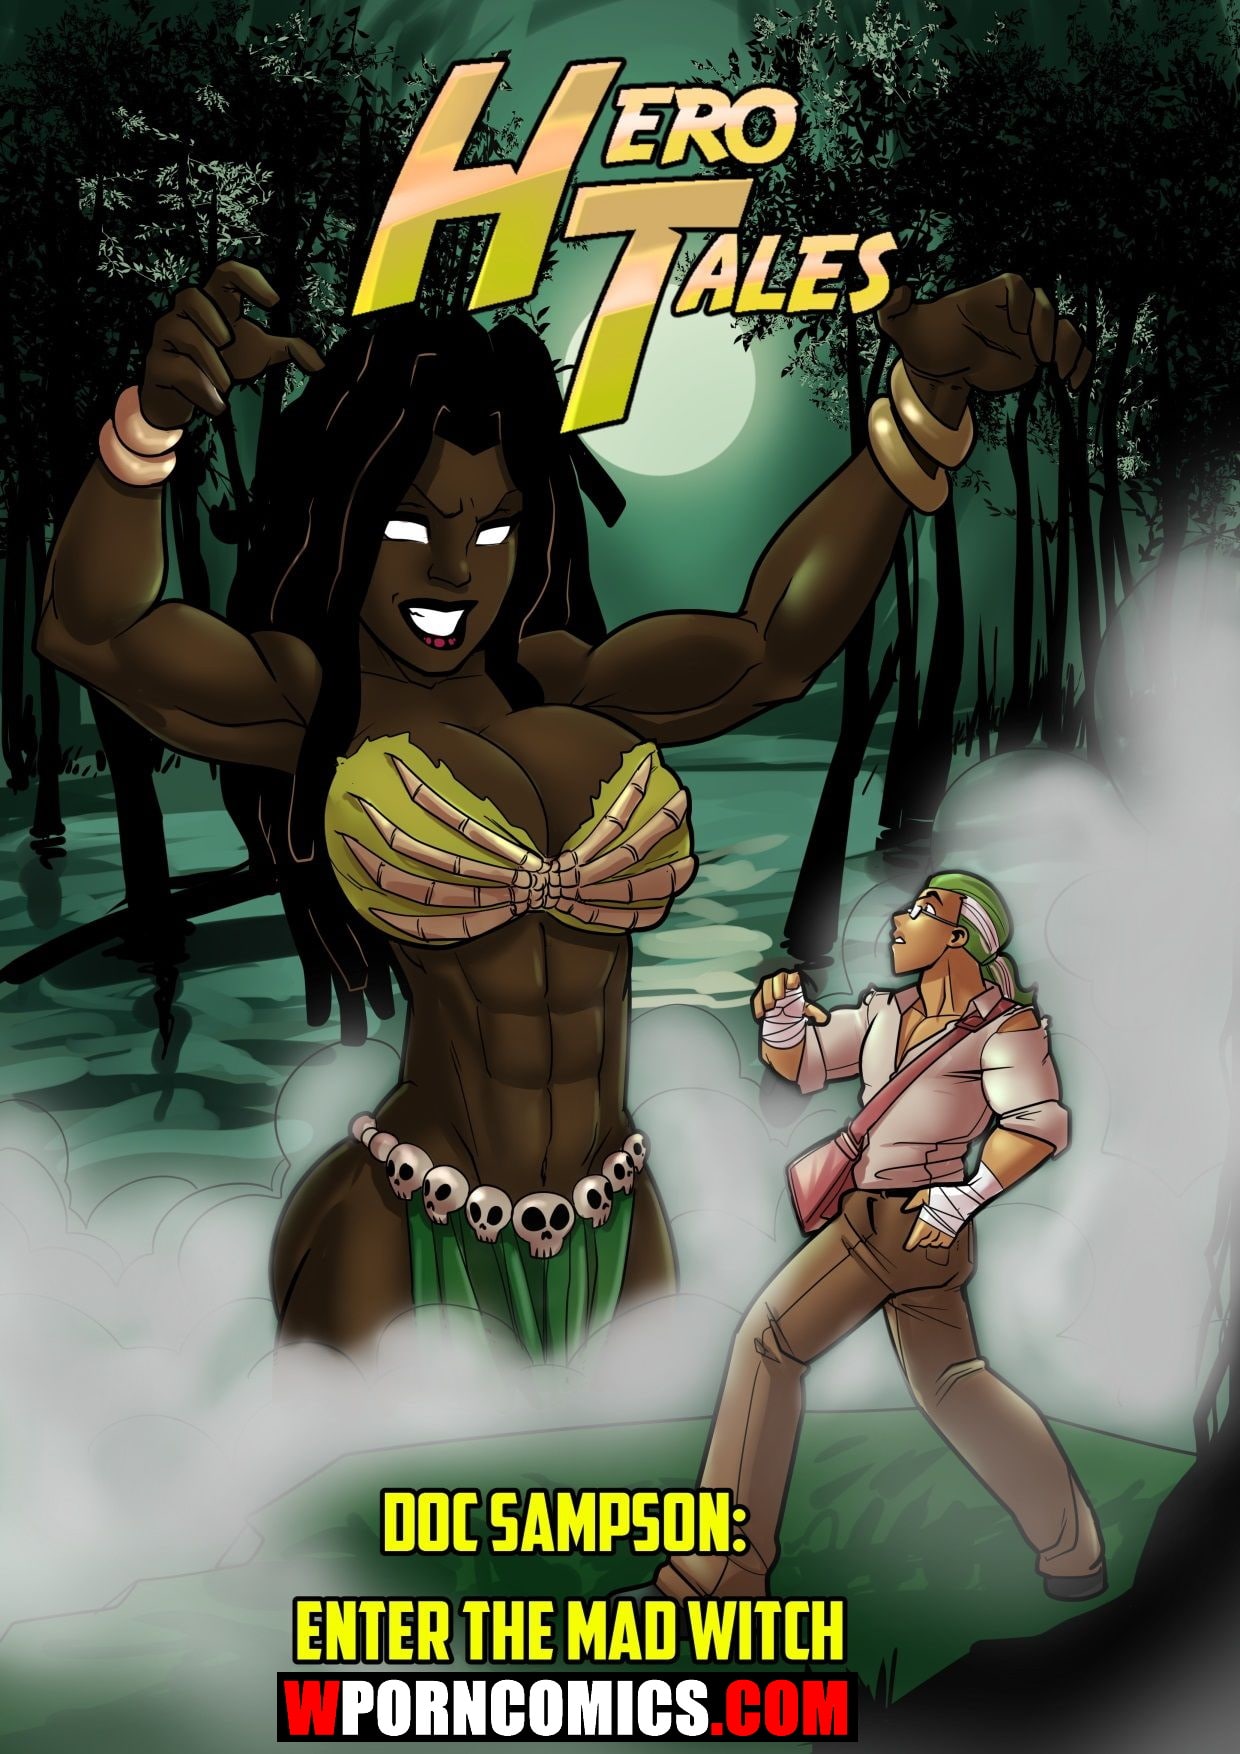 Black Witch Cartoon Porn - âœ…ï¸ Porn comic Hero Tales Part 2 Enter The Mad Witch sex comic black-skinned  | Porn comics in English for adults only | sexkomix2.com